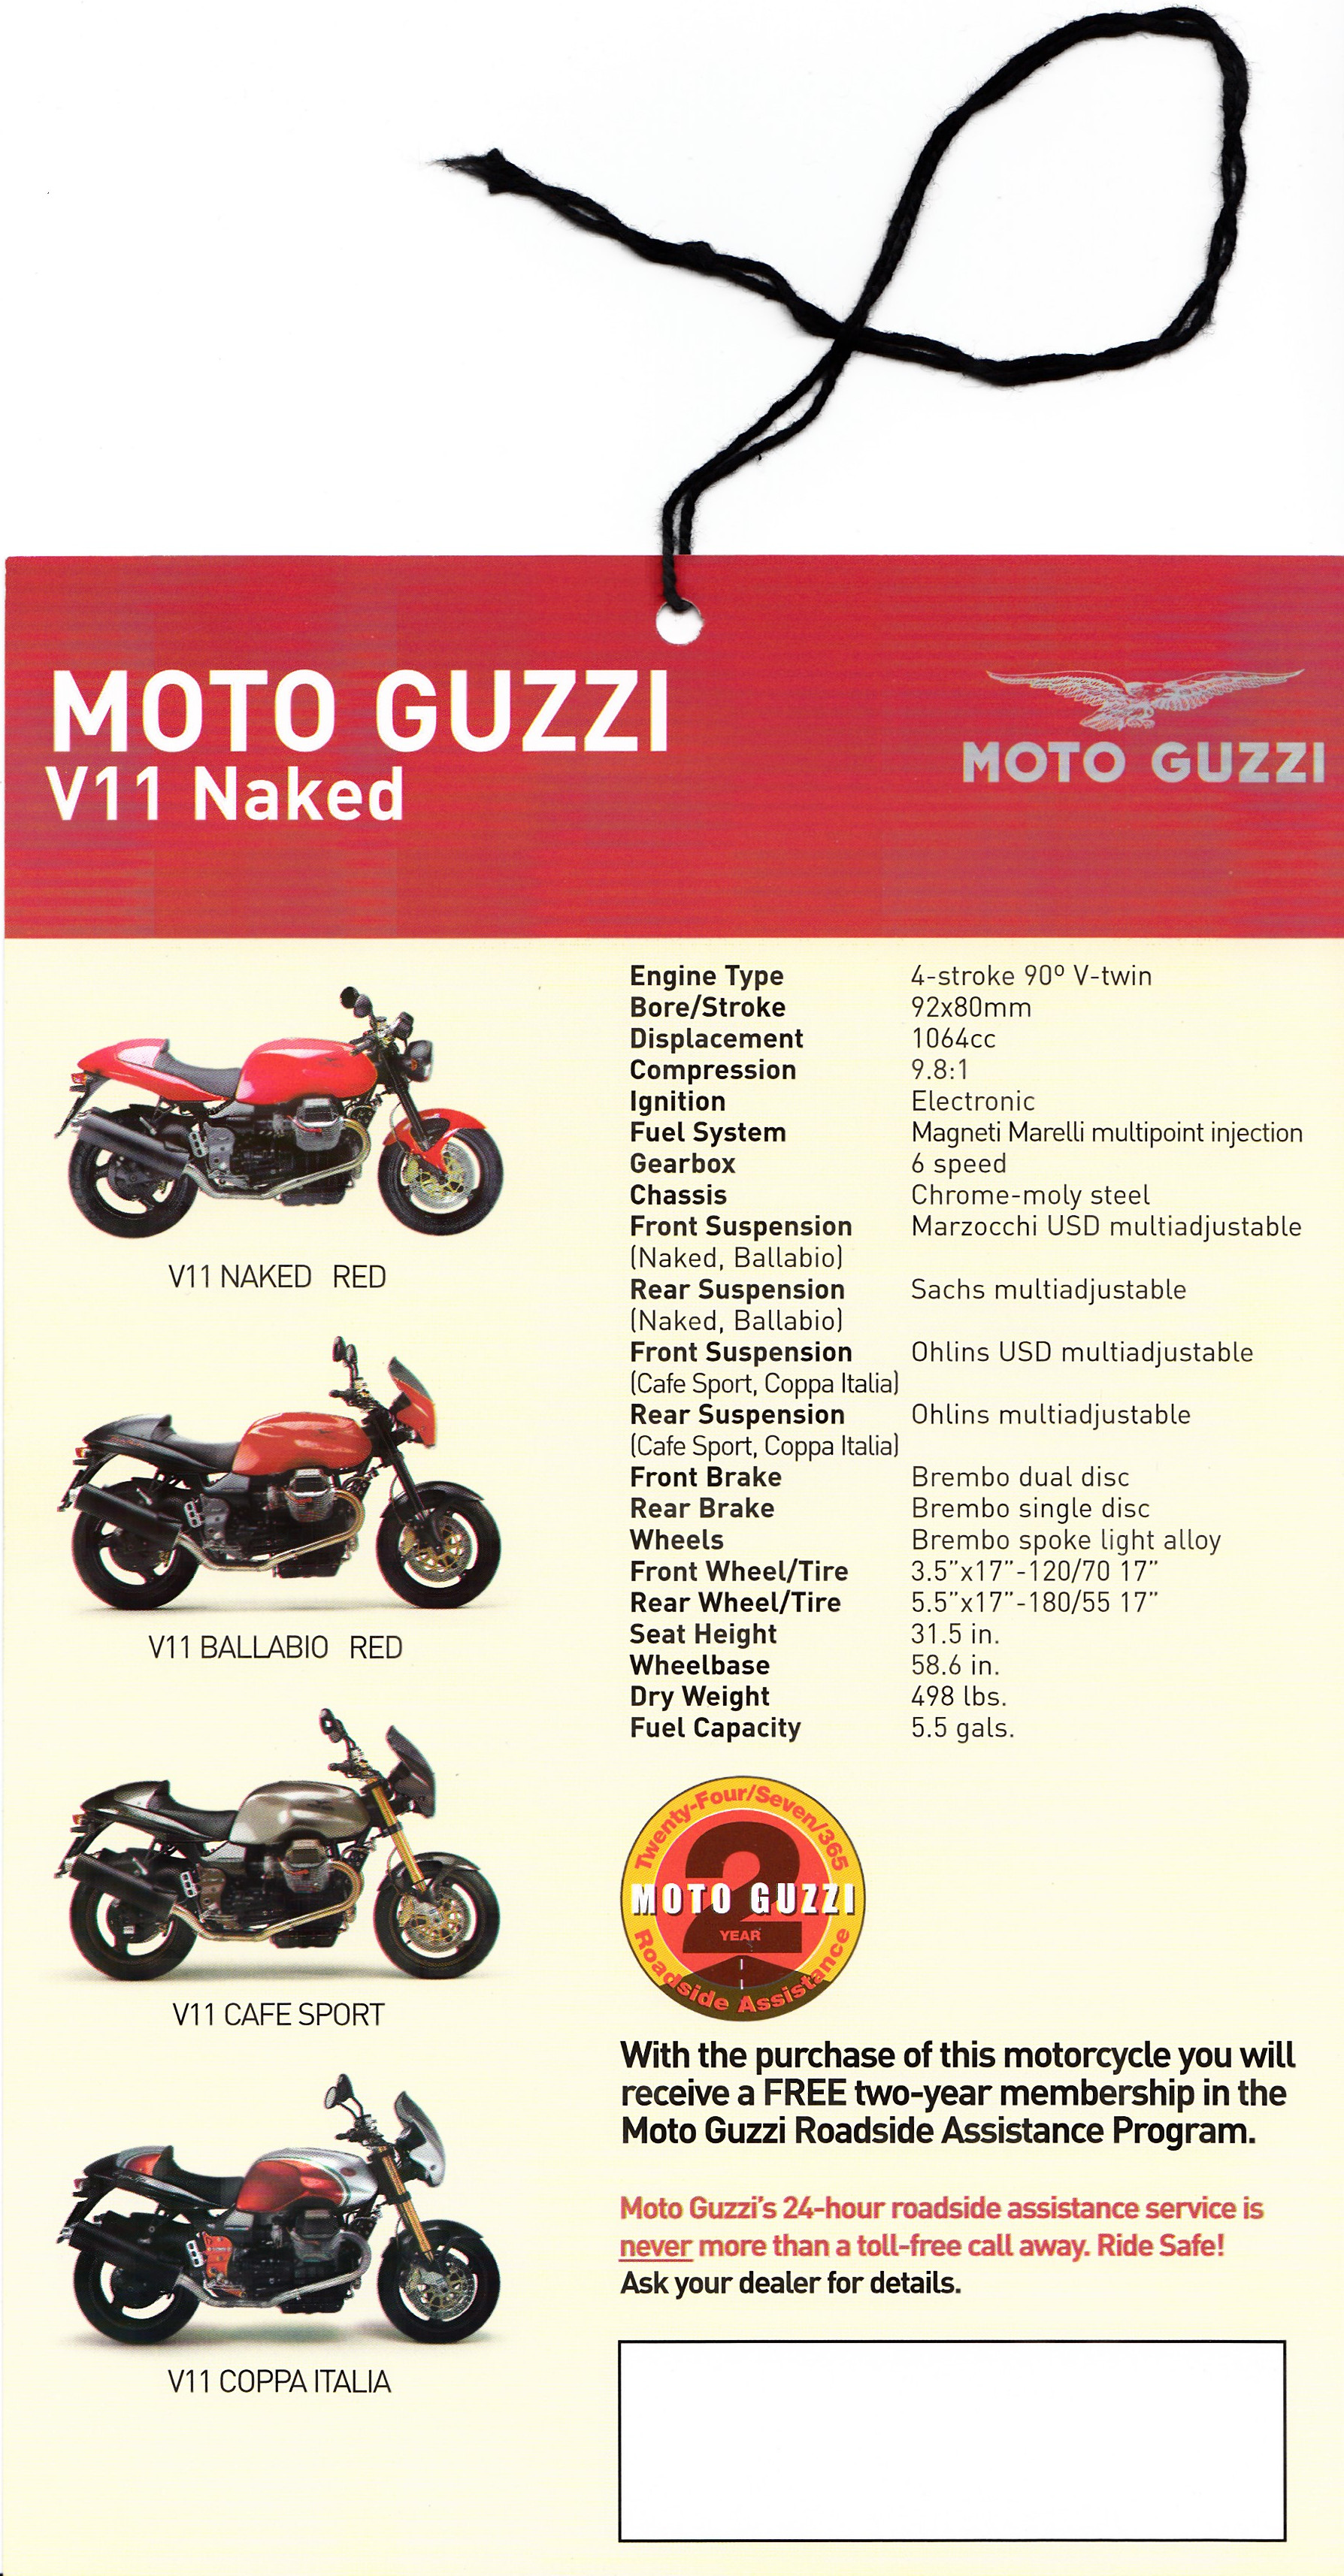 Tag - Moto Guzzi V11 Naked